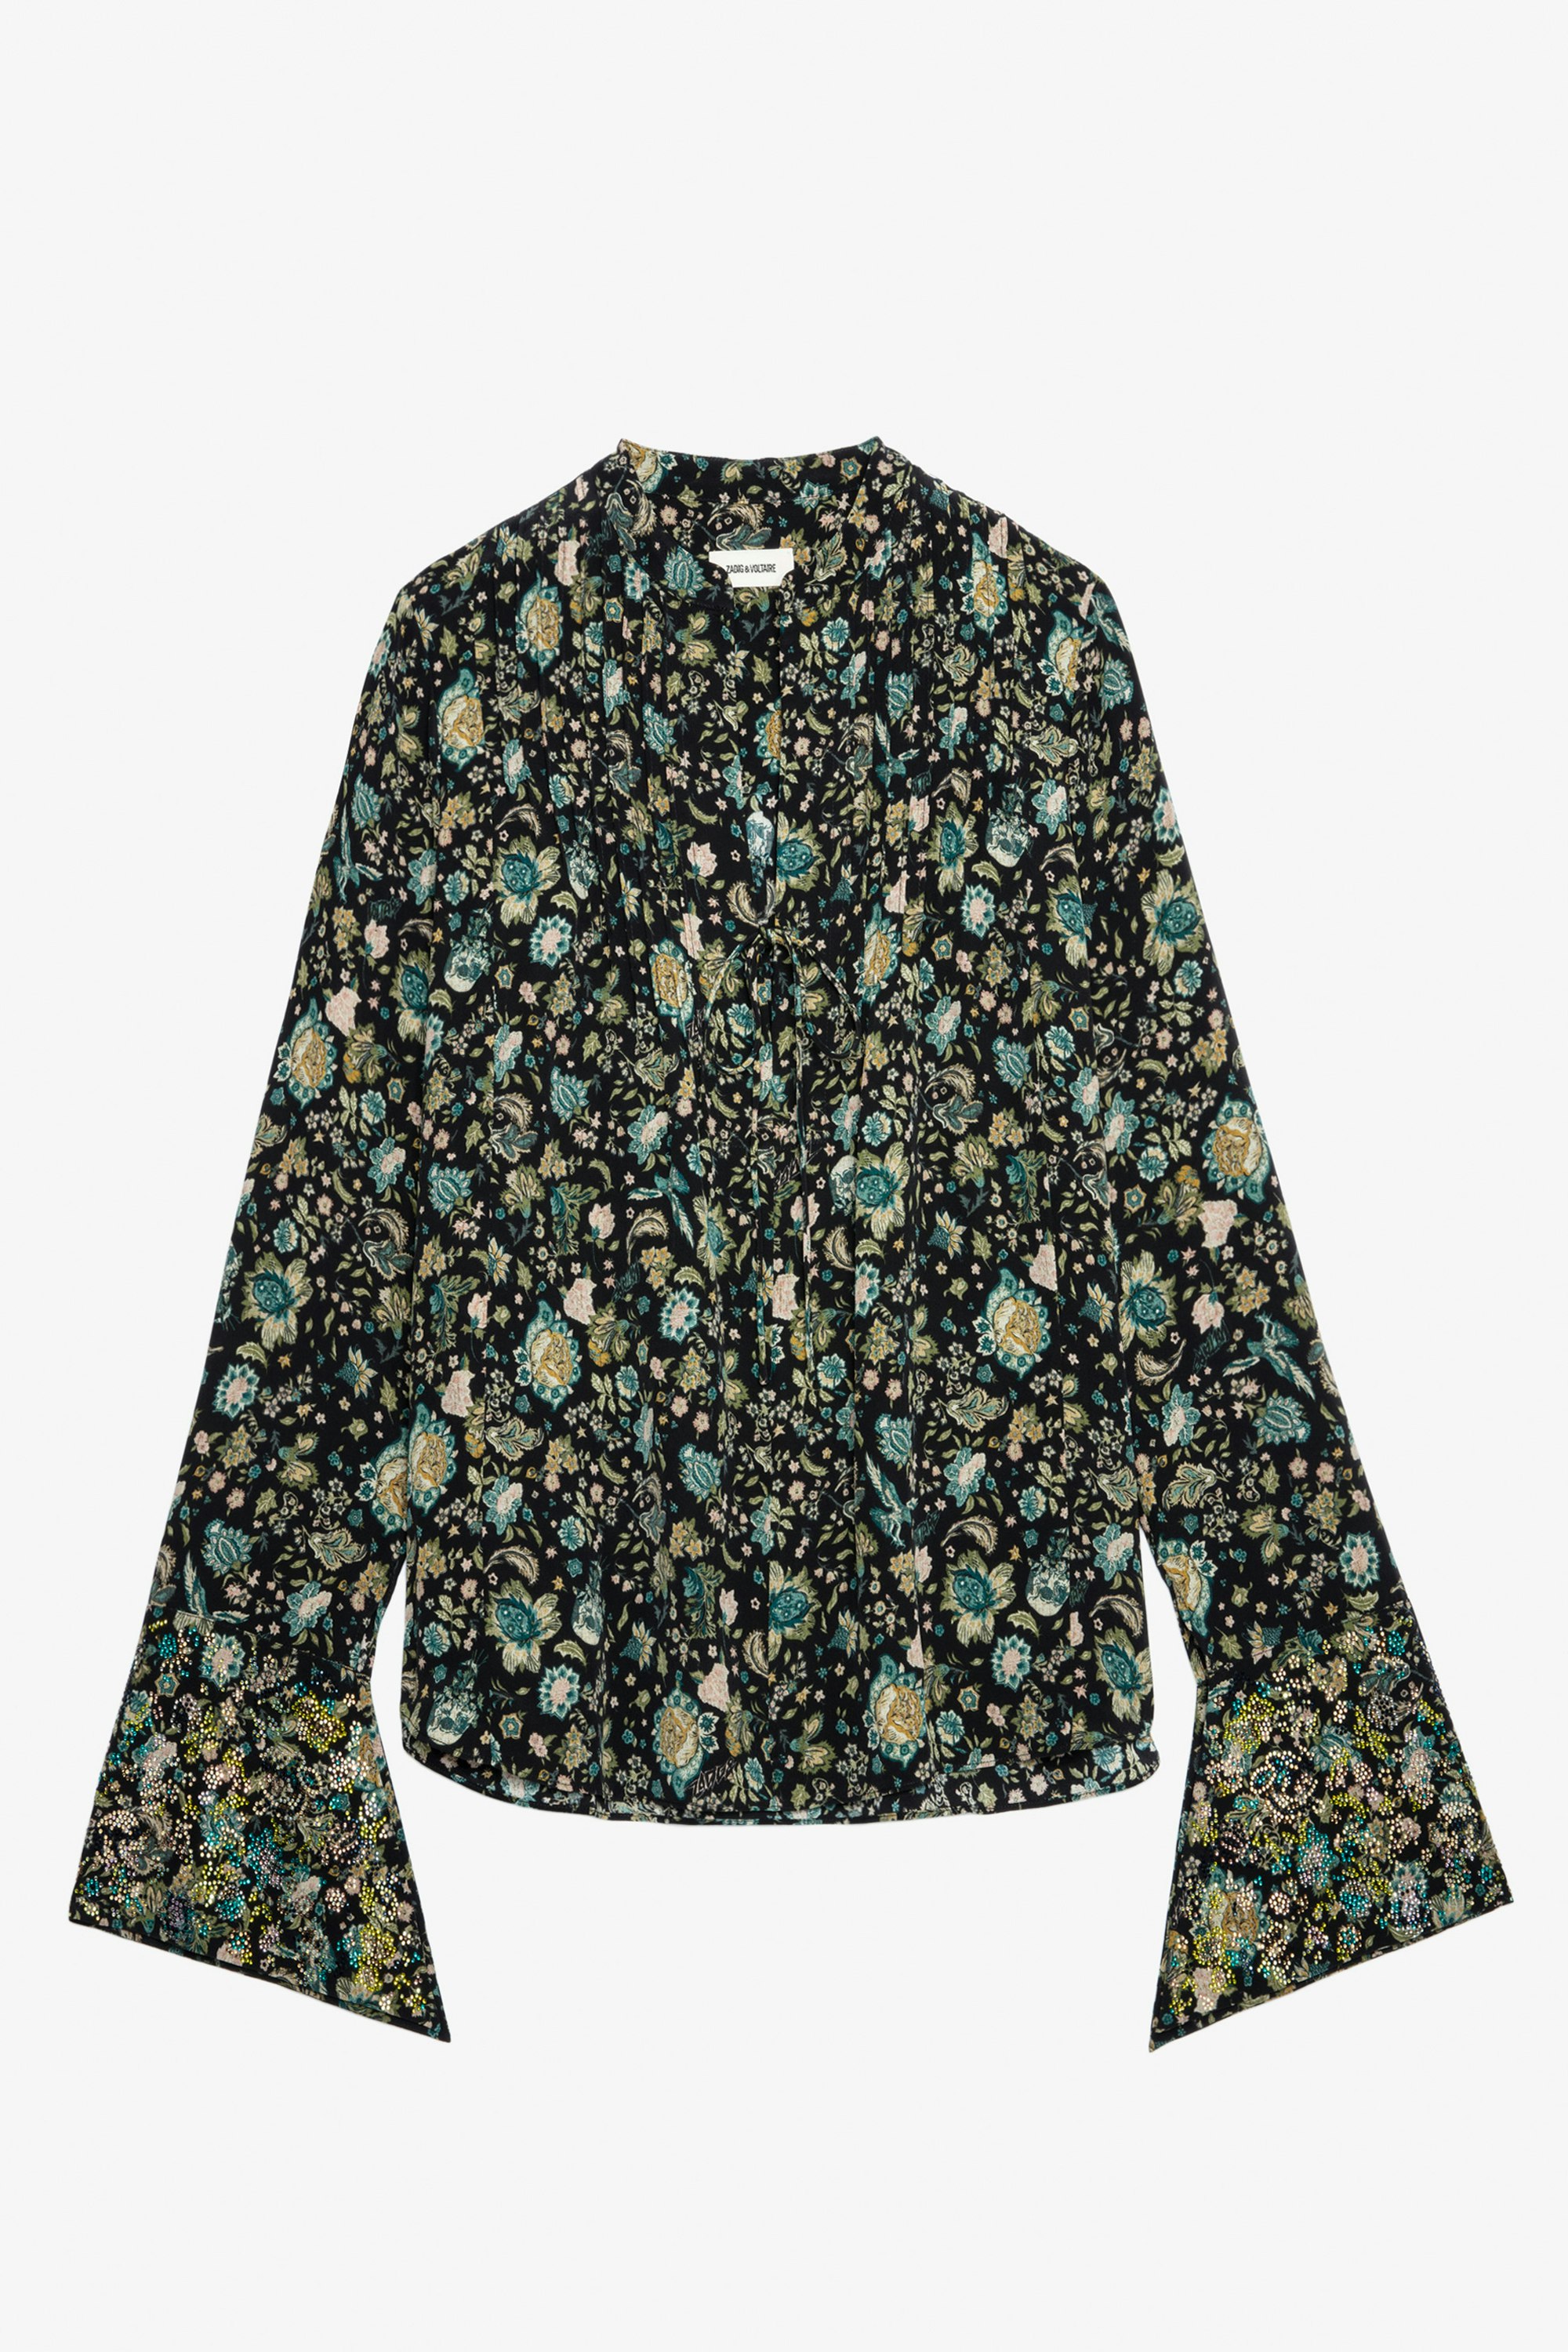 Blusa Taika Strass Seta - Blusa in seta con stampa a fiori e strass, collo da annodare e maniche lunghe.